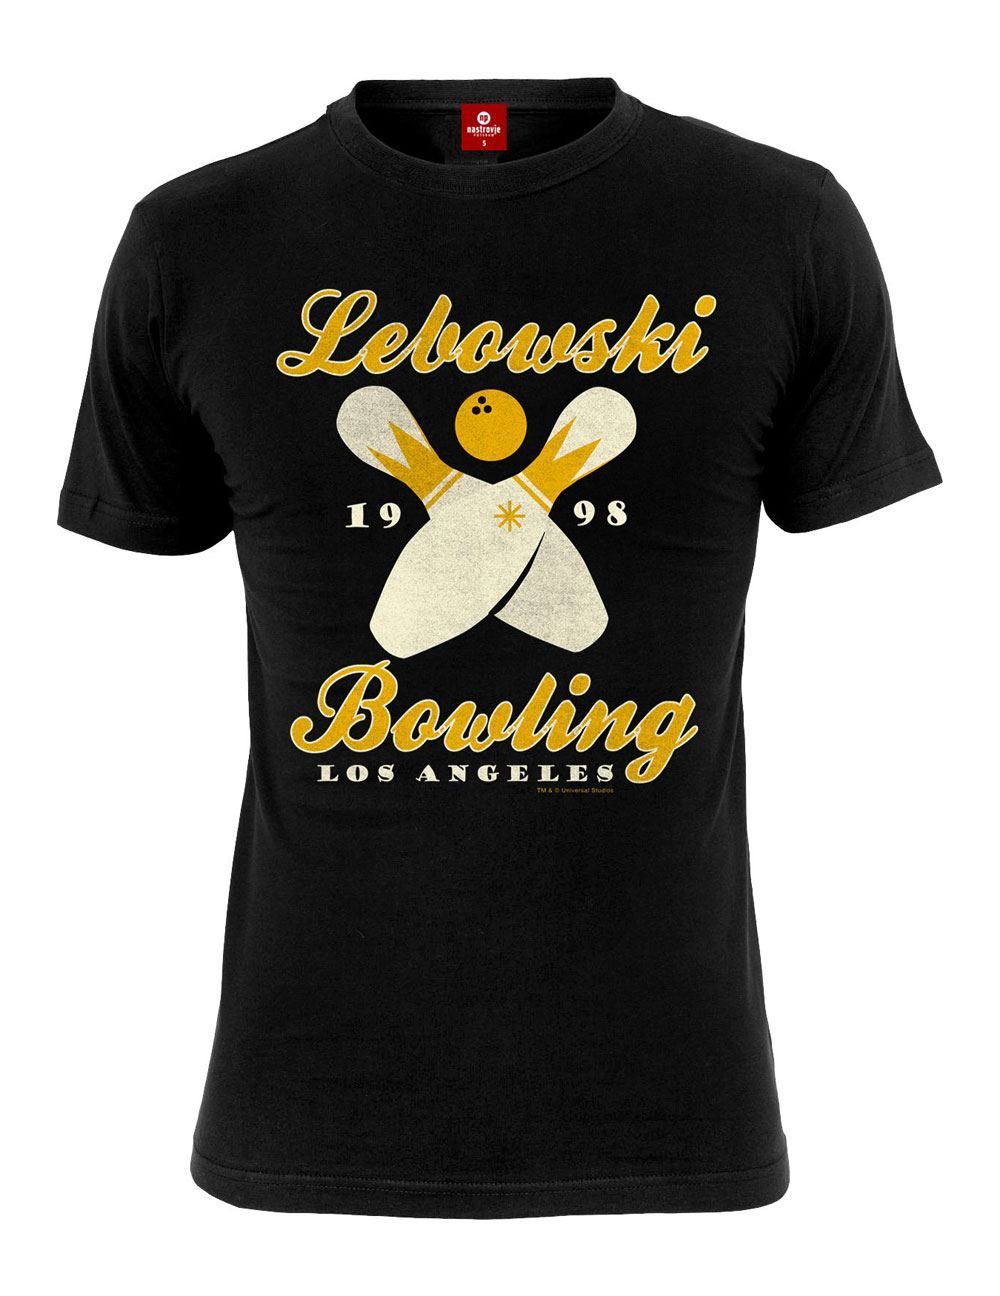 The Big Lebowski T-Shirt Bowling LA Size L Nastrovje Potsdam